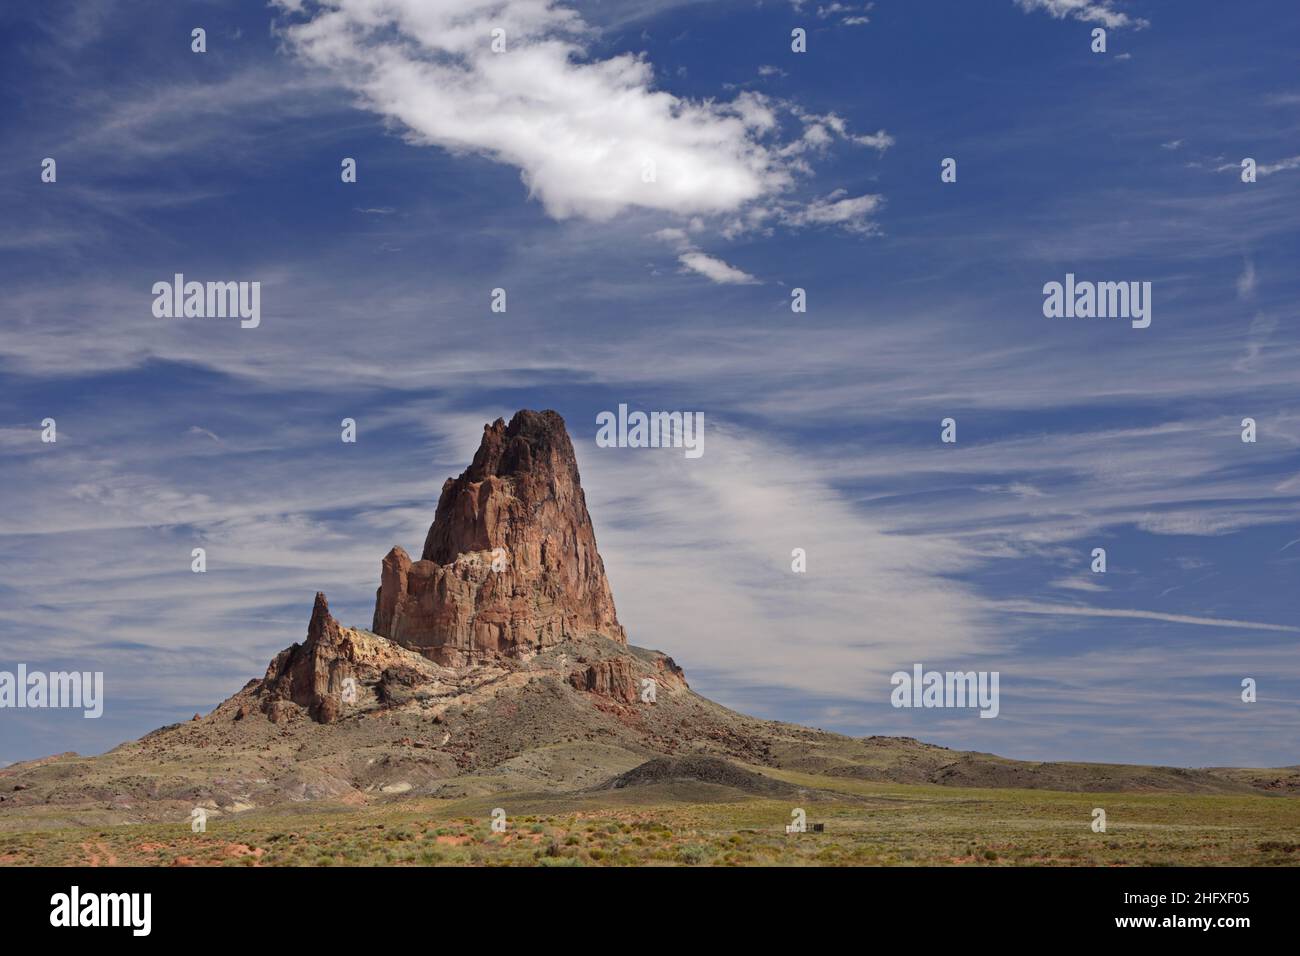 Agathla Peak o Agathlan, un collo vulcanico eroso a sud della Monument Valley, Arizona, USA, si erge a 1500 metri sopra il terreno pianeggiante Foto Stock